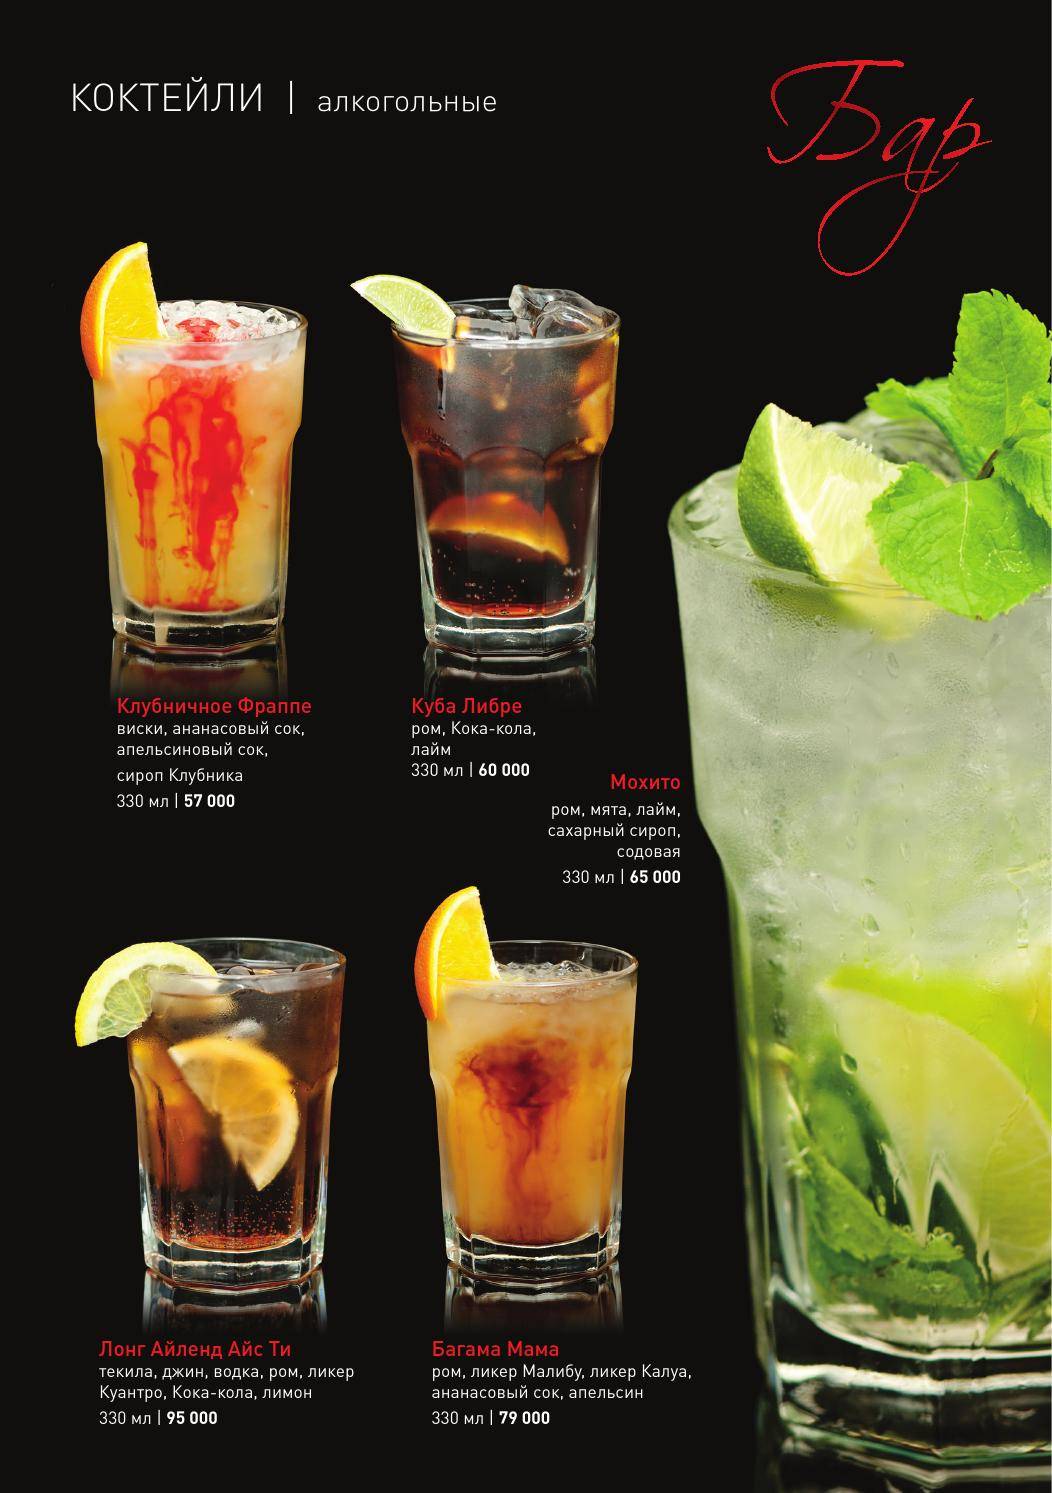 Алкогольный коктейль «джин физ»: рецепт с фото